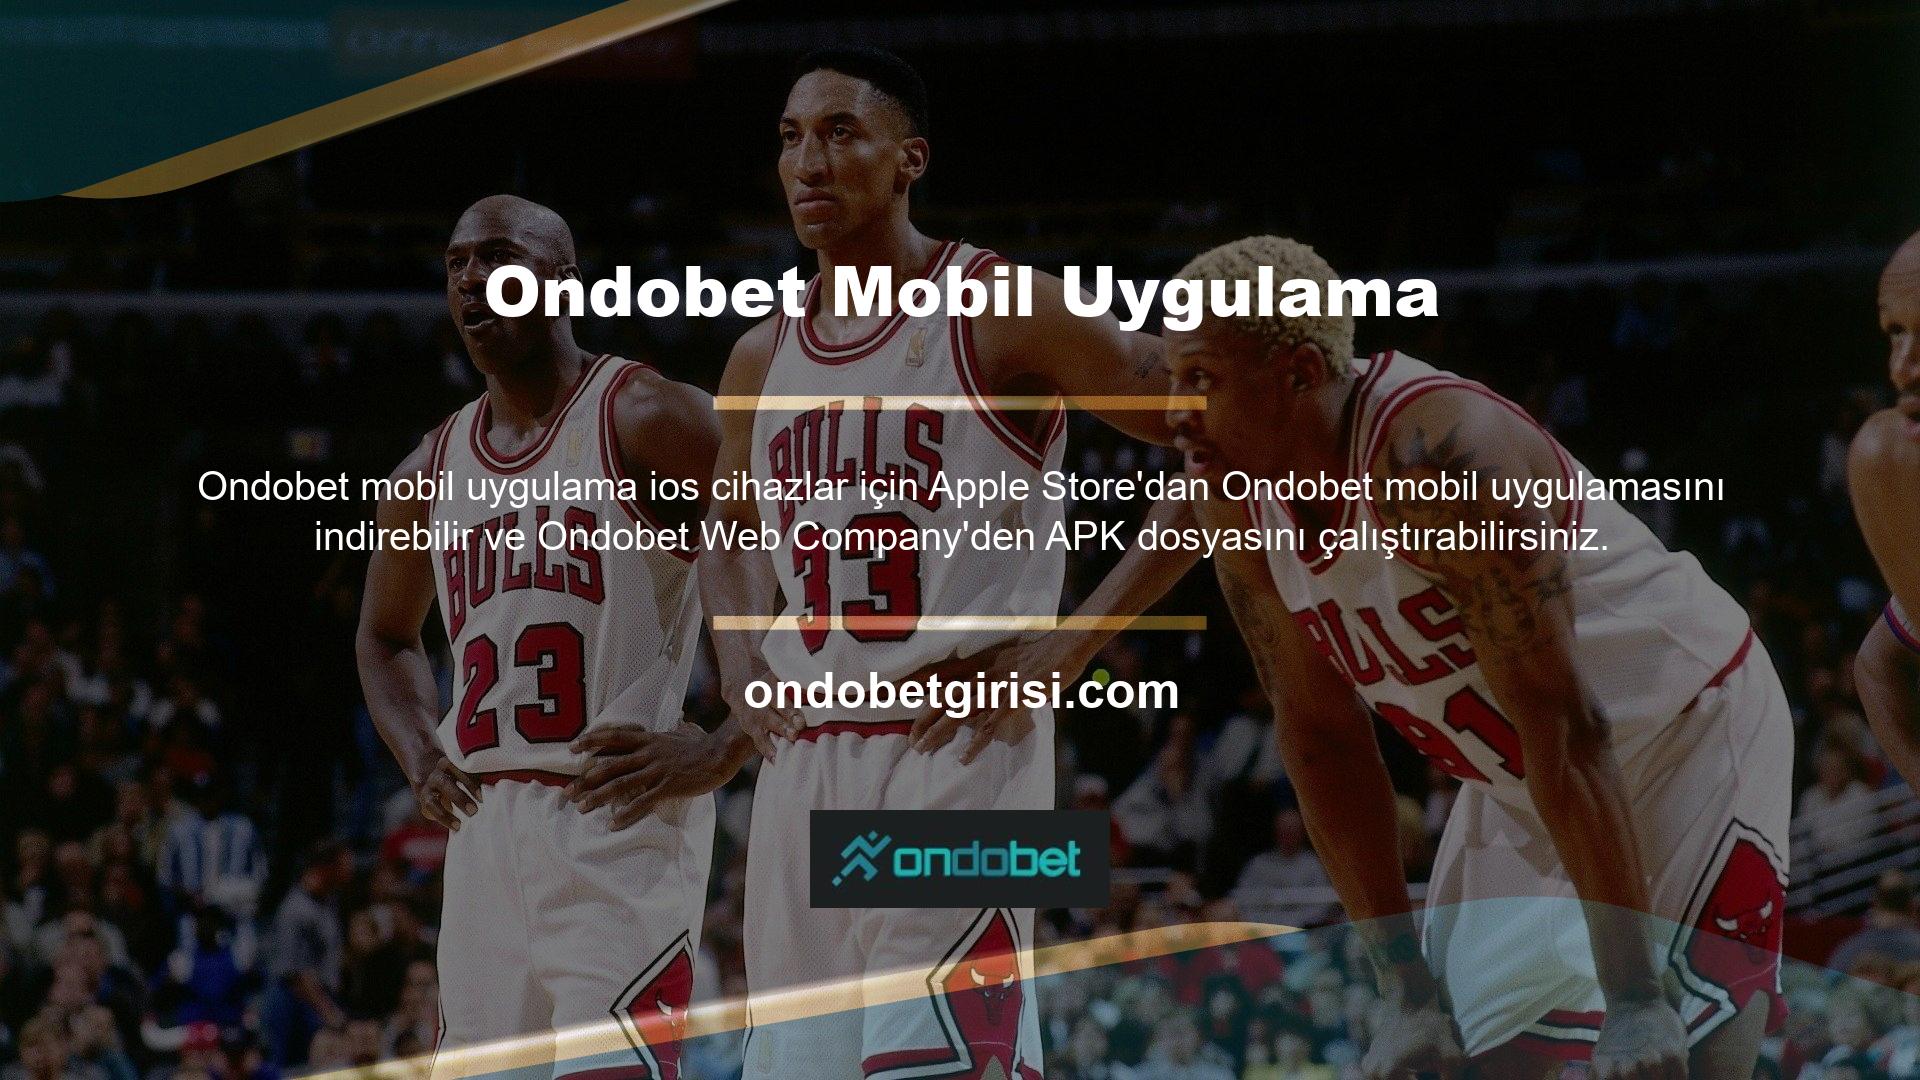 iOS cihazlar için Ondobet uygulamasının arayüzü pürüzsüz ve kullanımı kolaydır